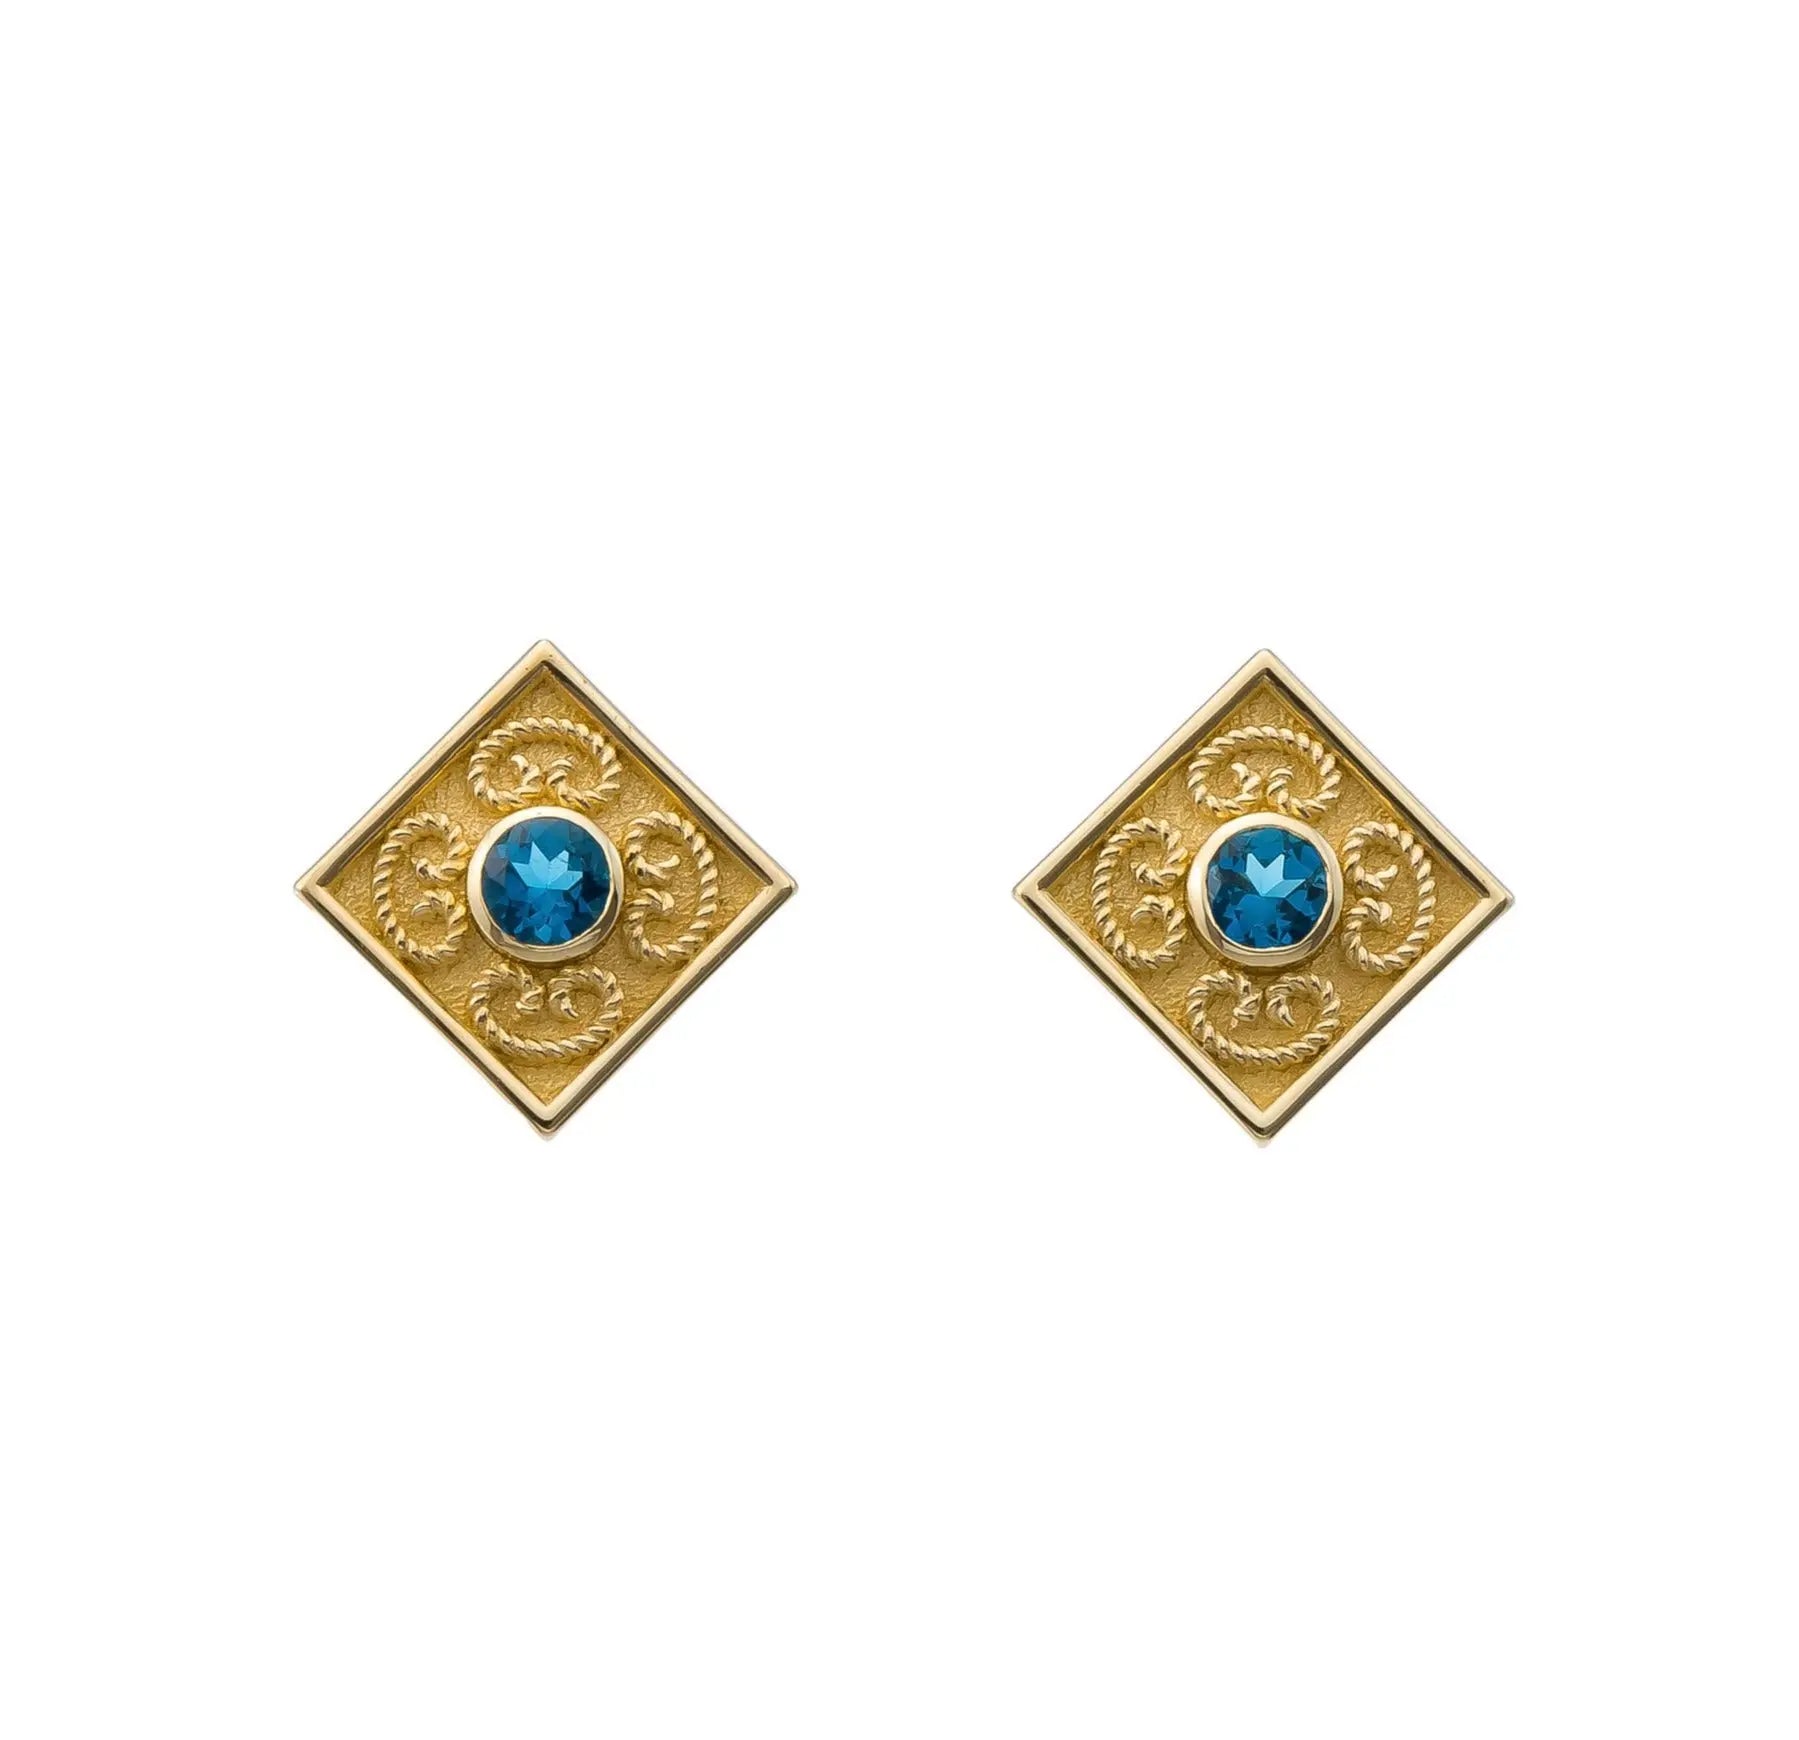 London Topaz Byzantine Earrings Odysseus Jewelry